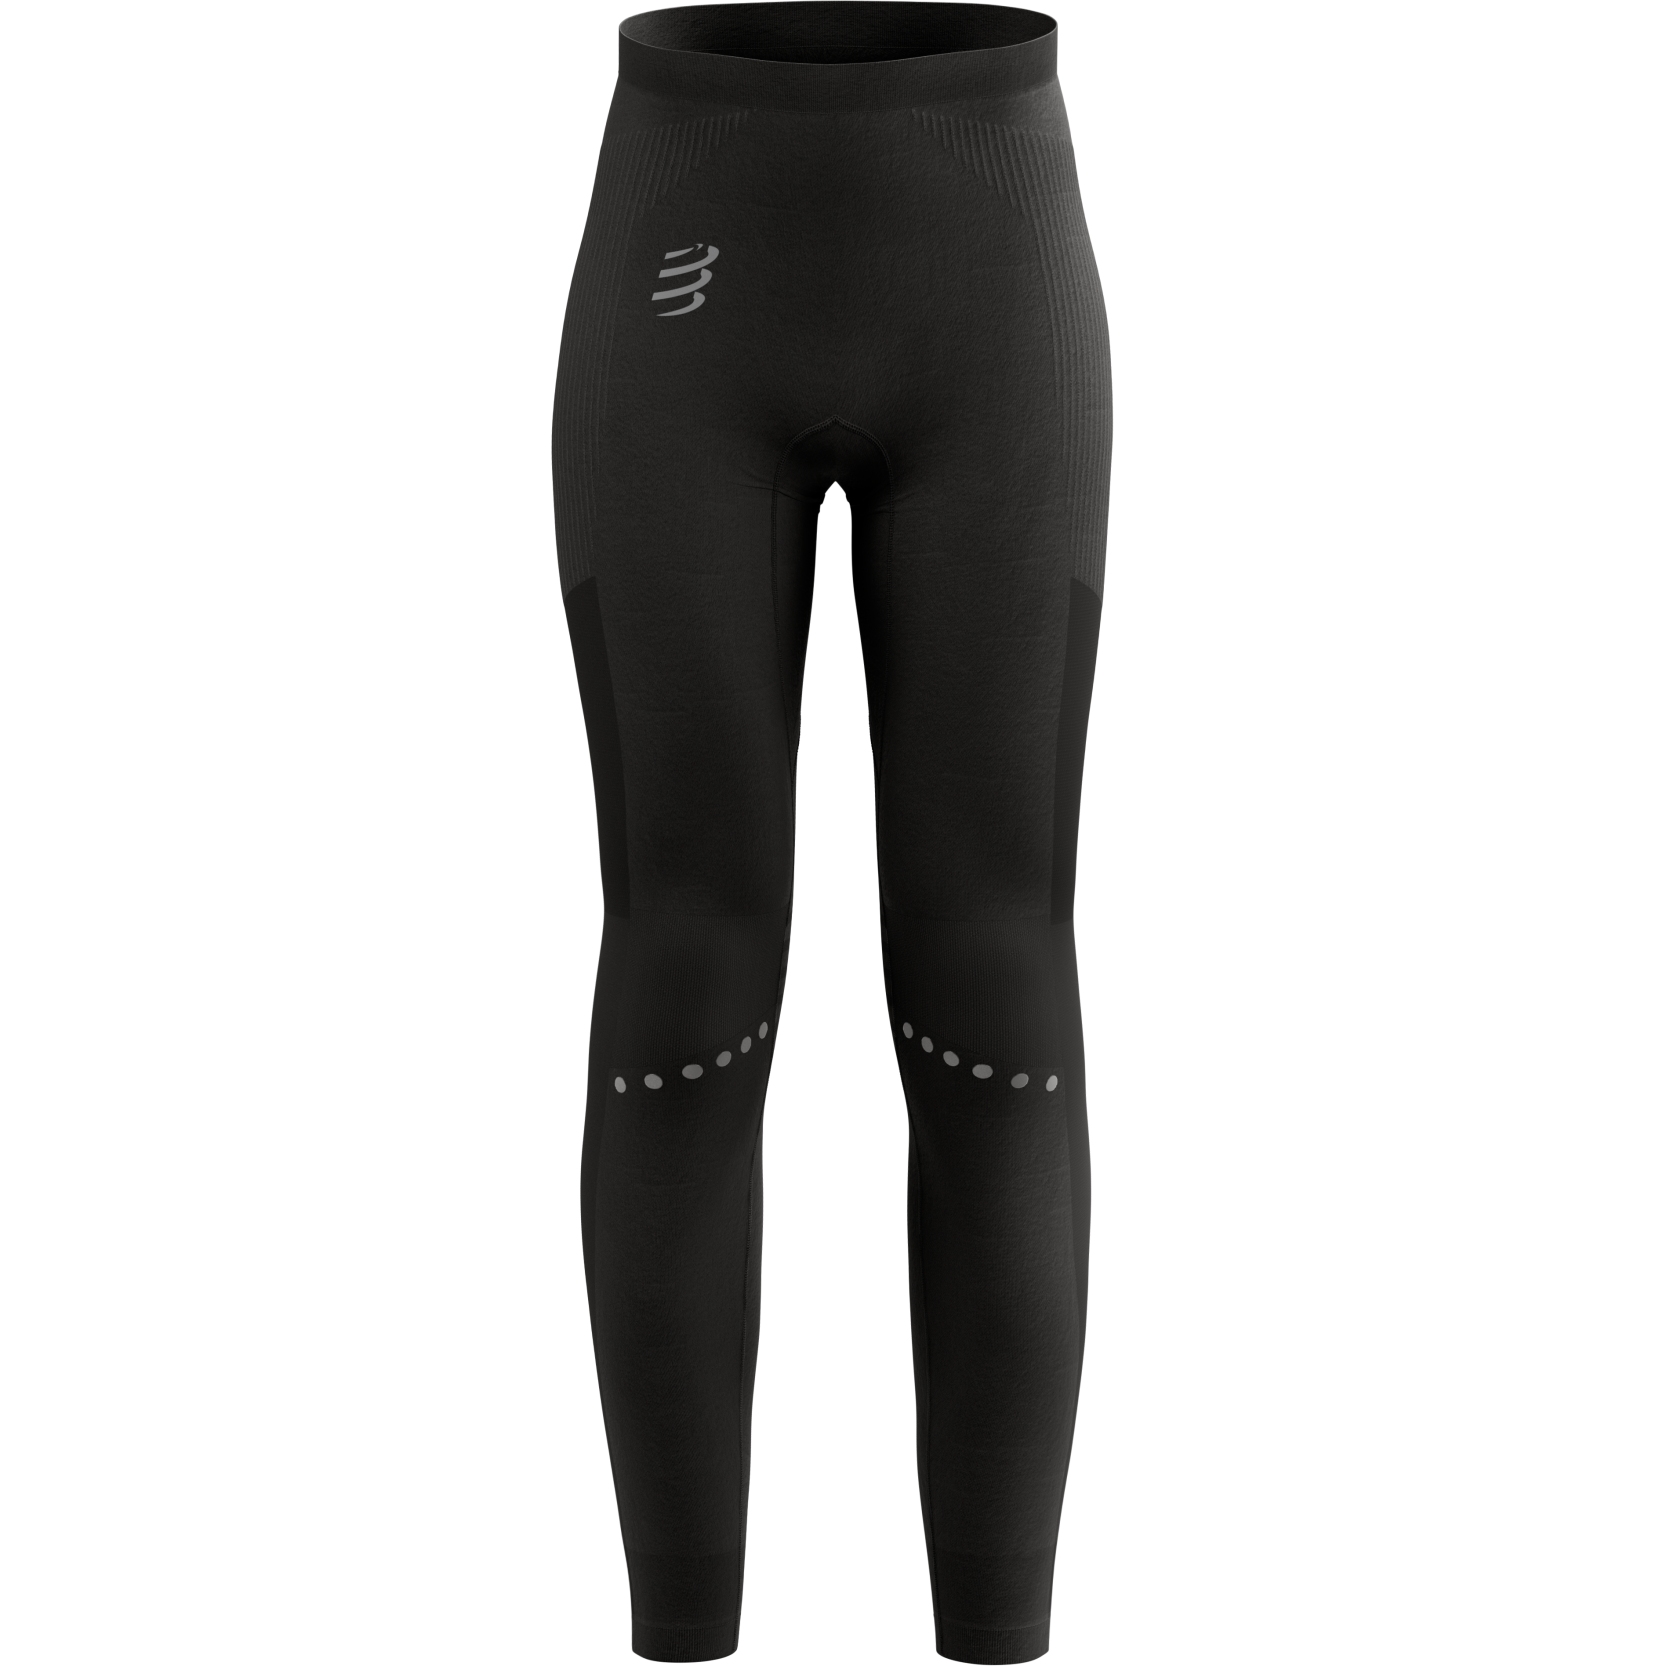 Productfoto van Compressport Winter Running Legging Dames - zwart